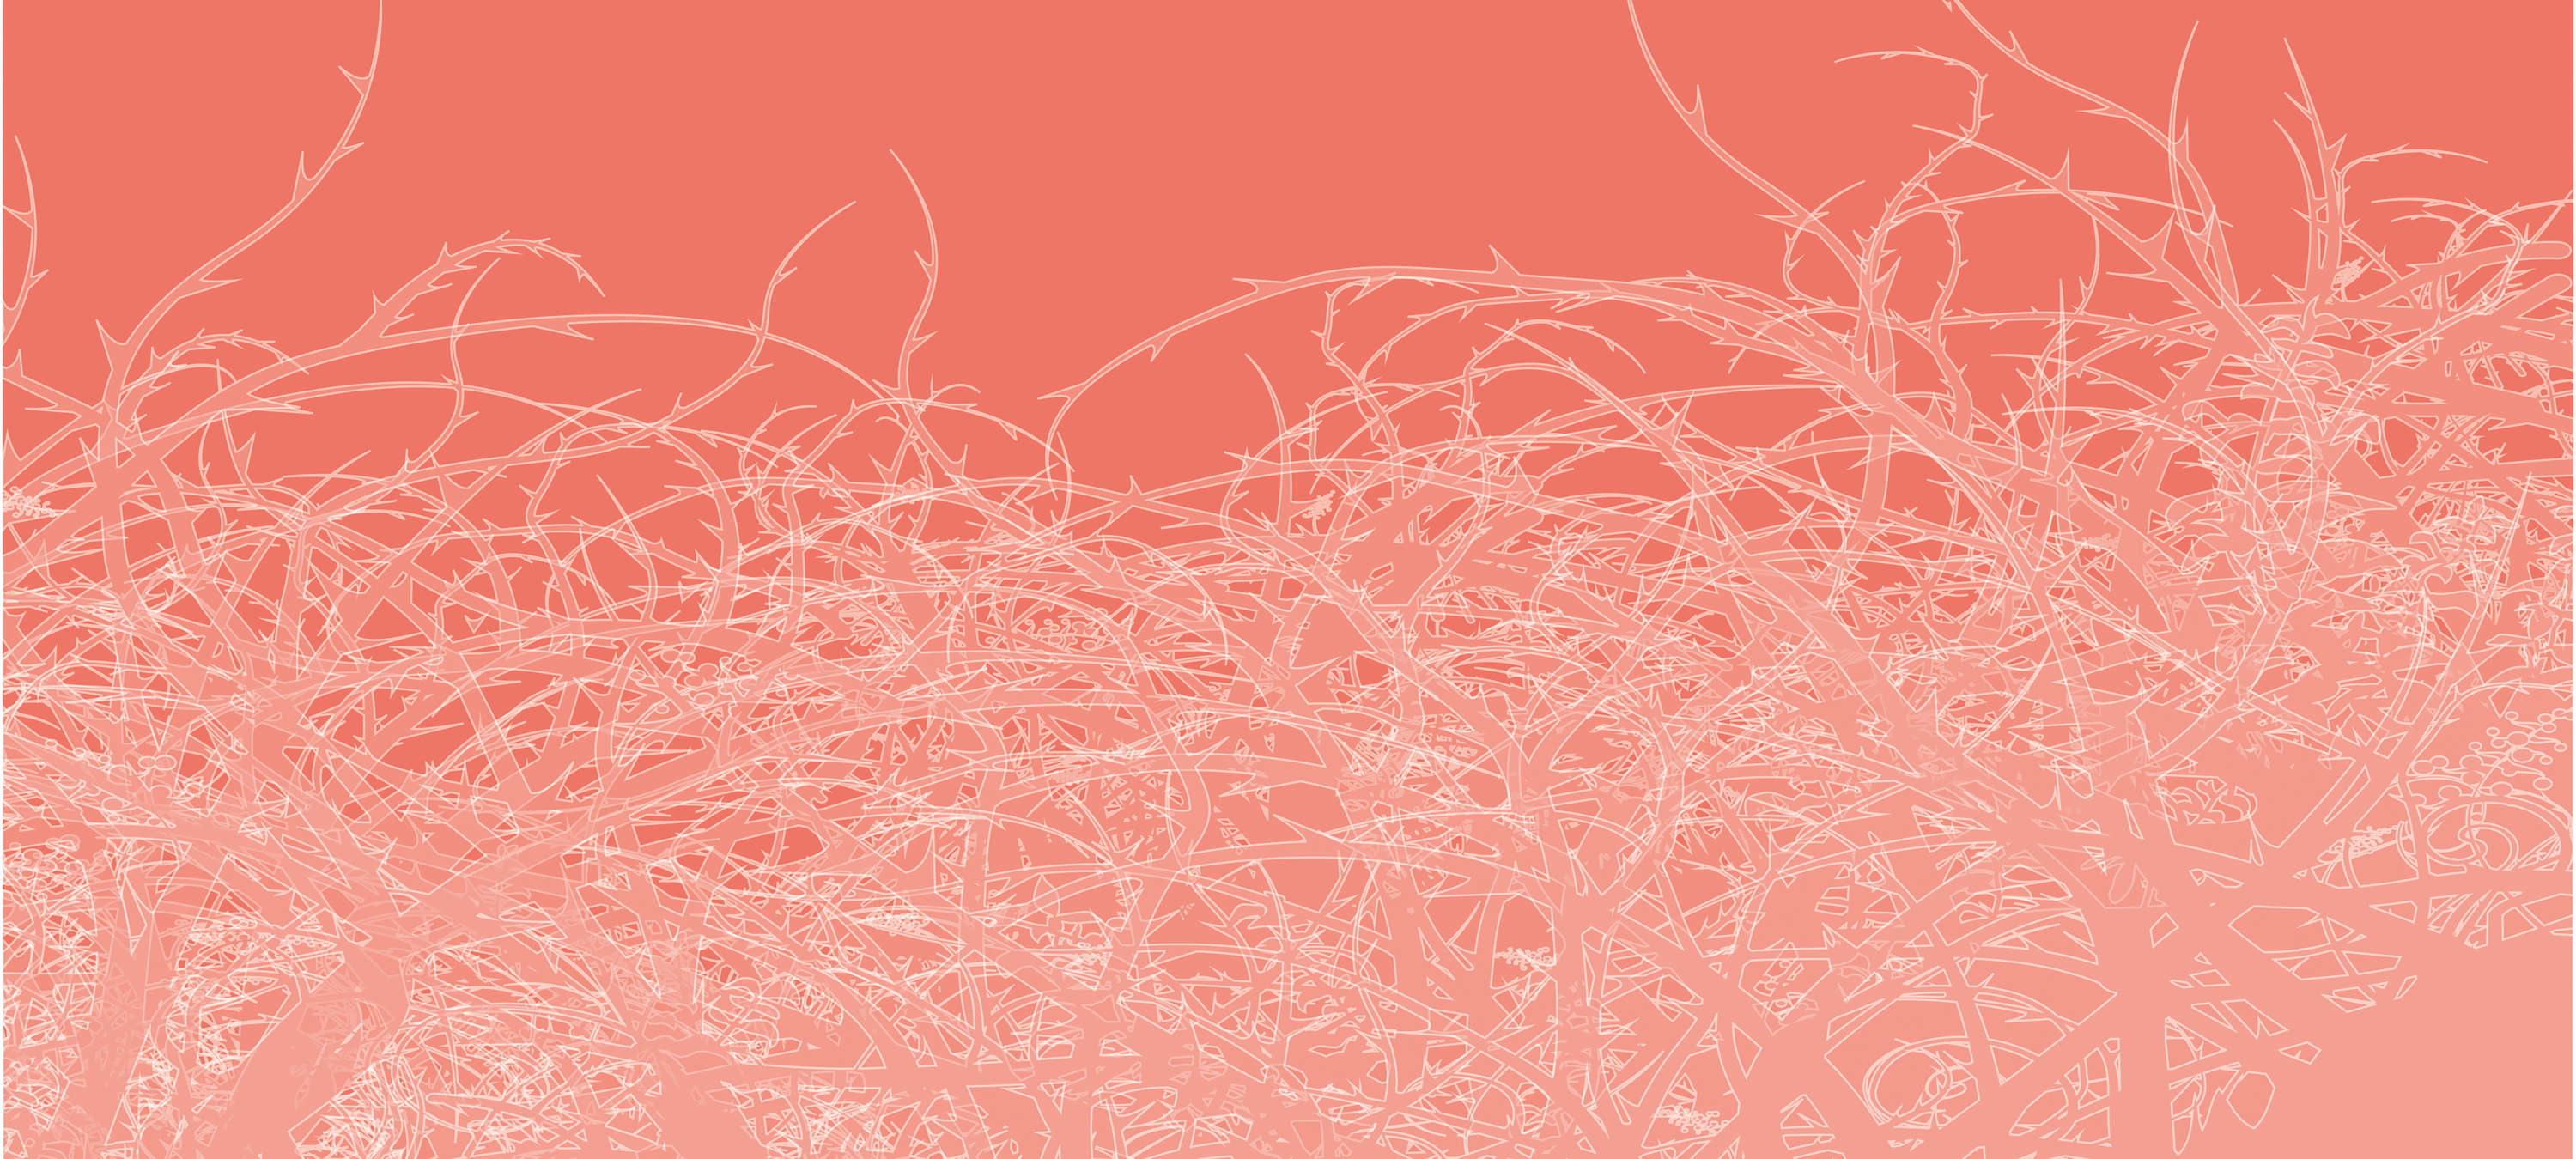             Carta da parati "Thorny Vines" di Graphic Design - Rosa, bianco, rosso
        